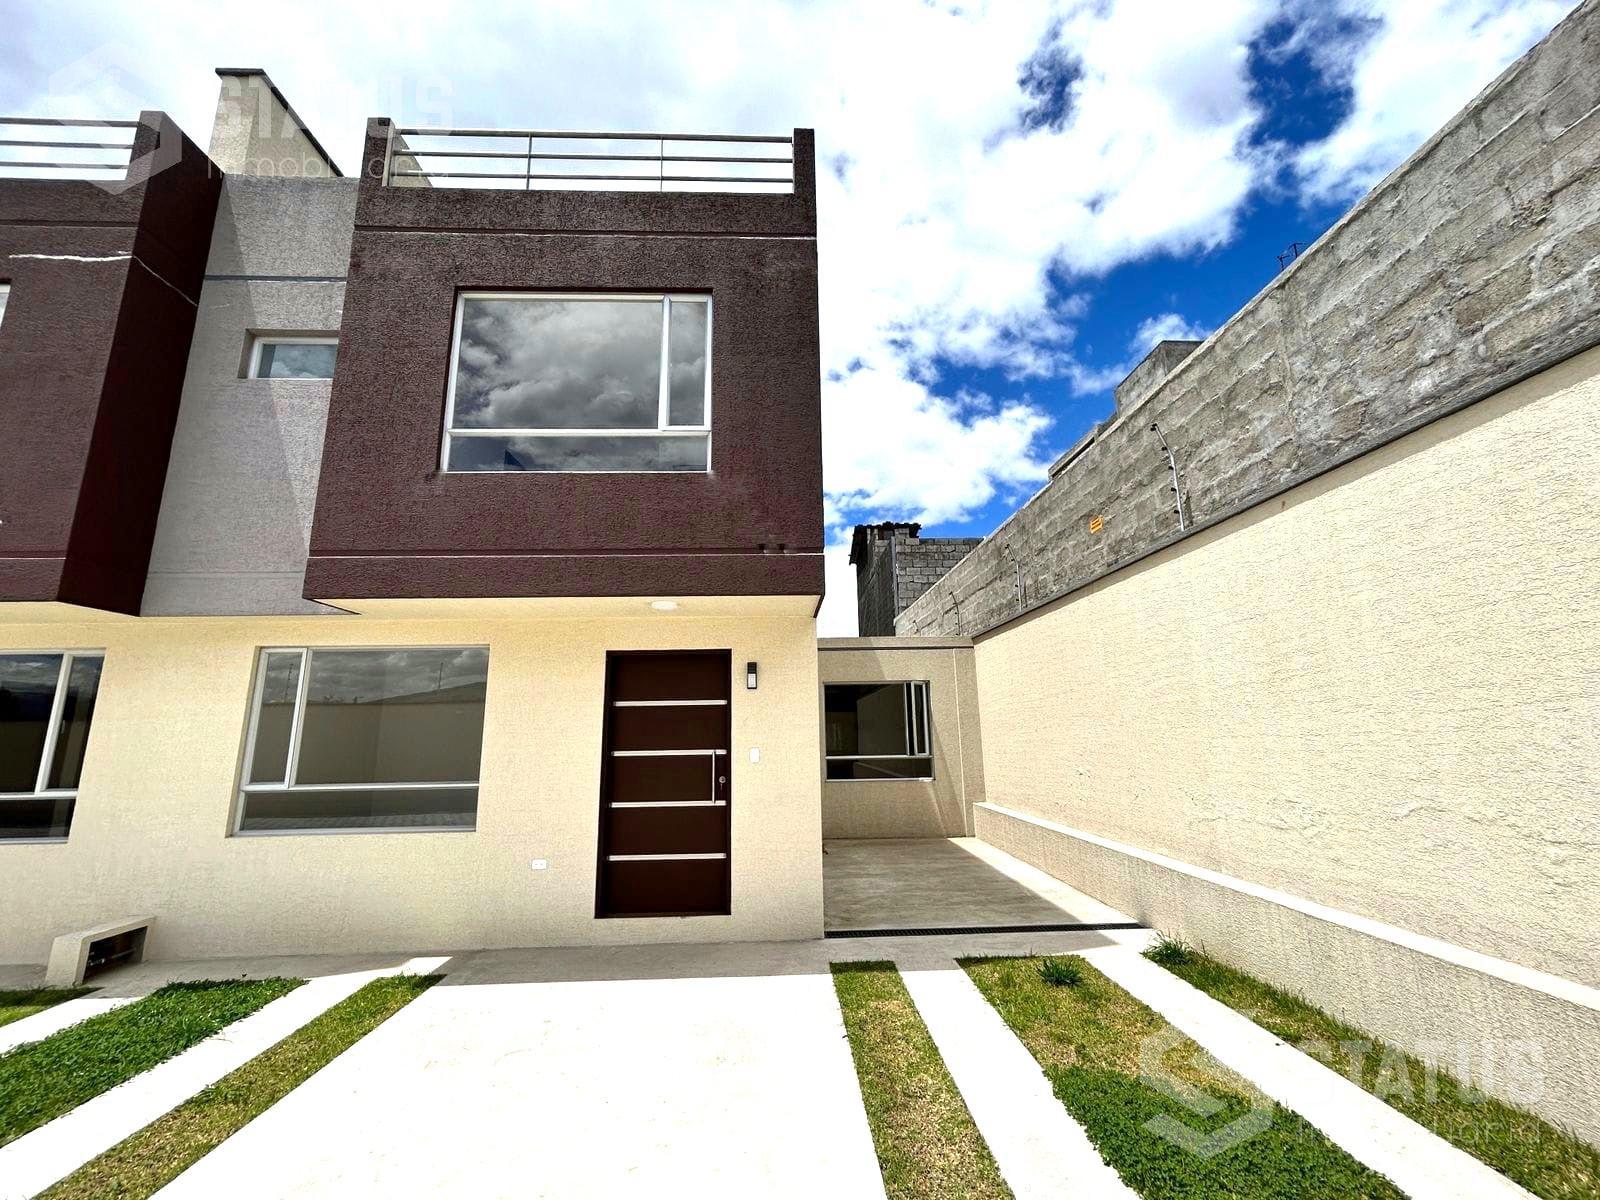 ¡Aplica crédito VIP! Vendo casa de 3 Dorm., terraza, sector El Dean - Los Chillos. $105.000